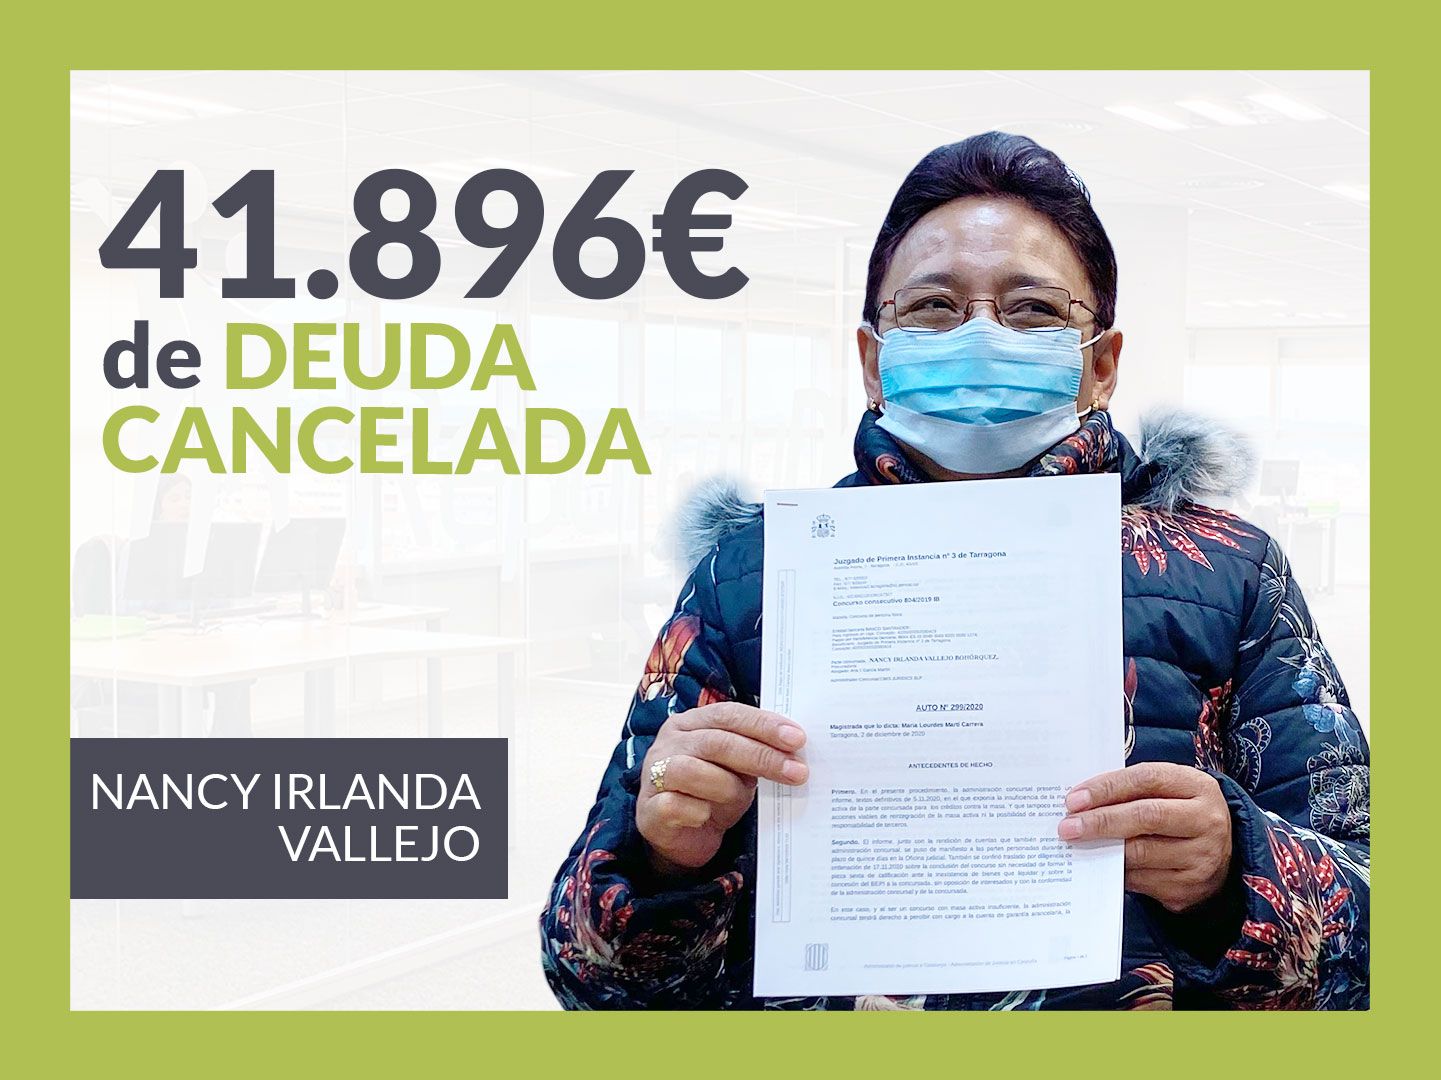 Repara tu Deuda cancela una deuda de 41.896 ? en Tarragona con la Ley de Segunda Oportunidad